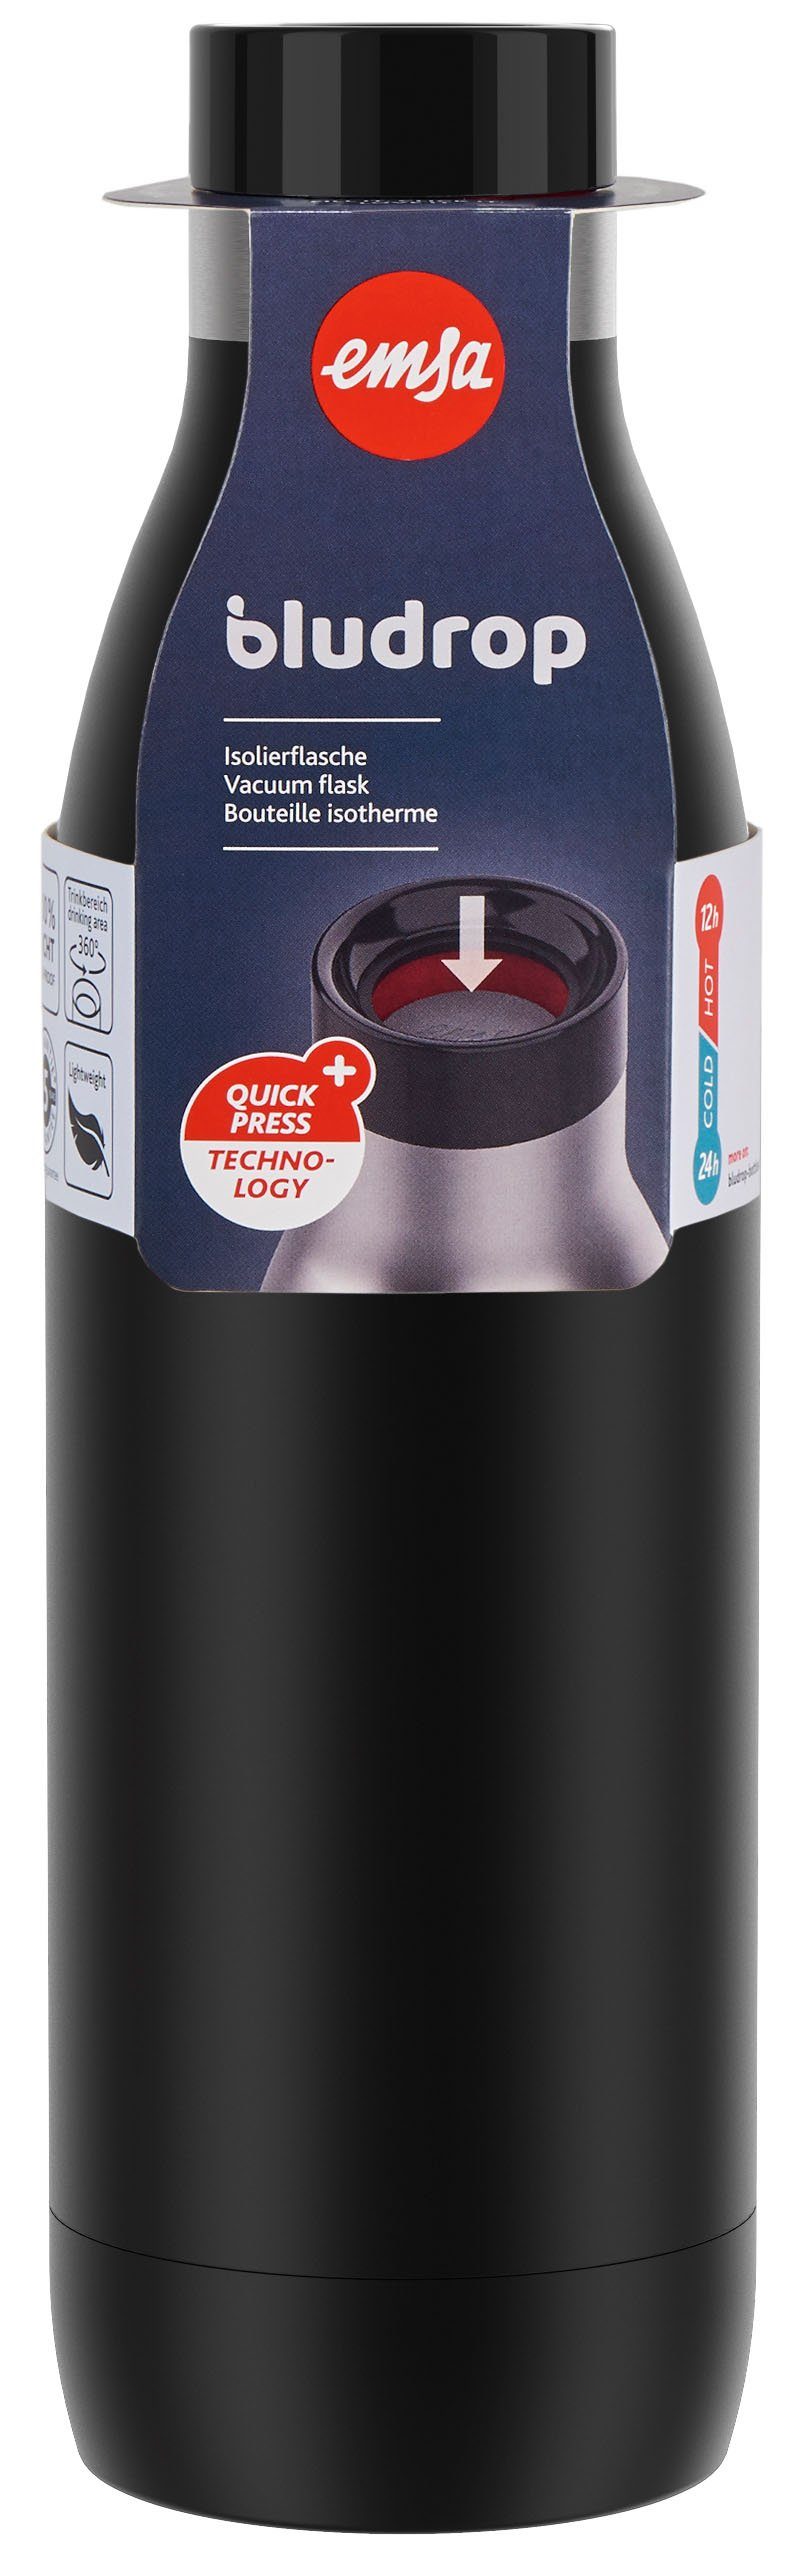 Deckel, Edelstahl, warm/24h Trinkflasche kühl, schwarz 12h Emsa Bludrop Quick-Press spülmaschinenfest Color,